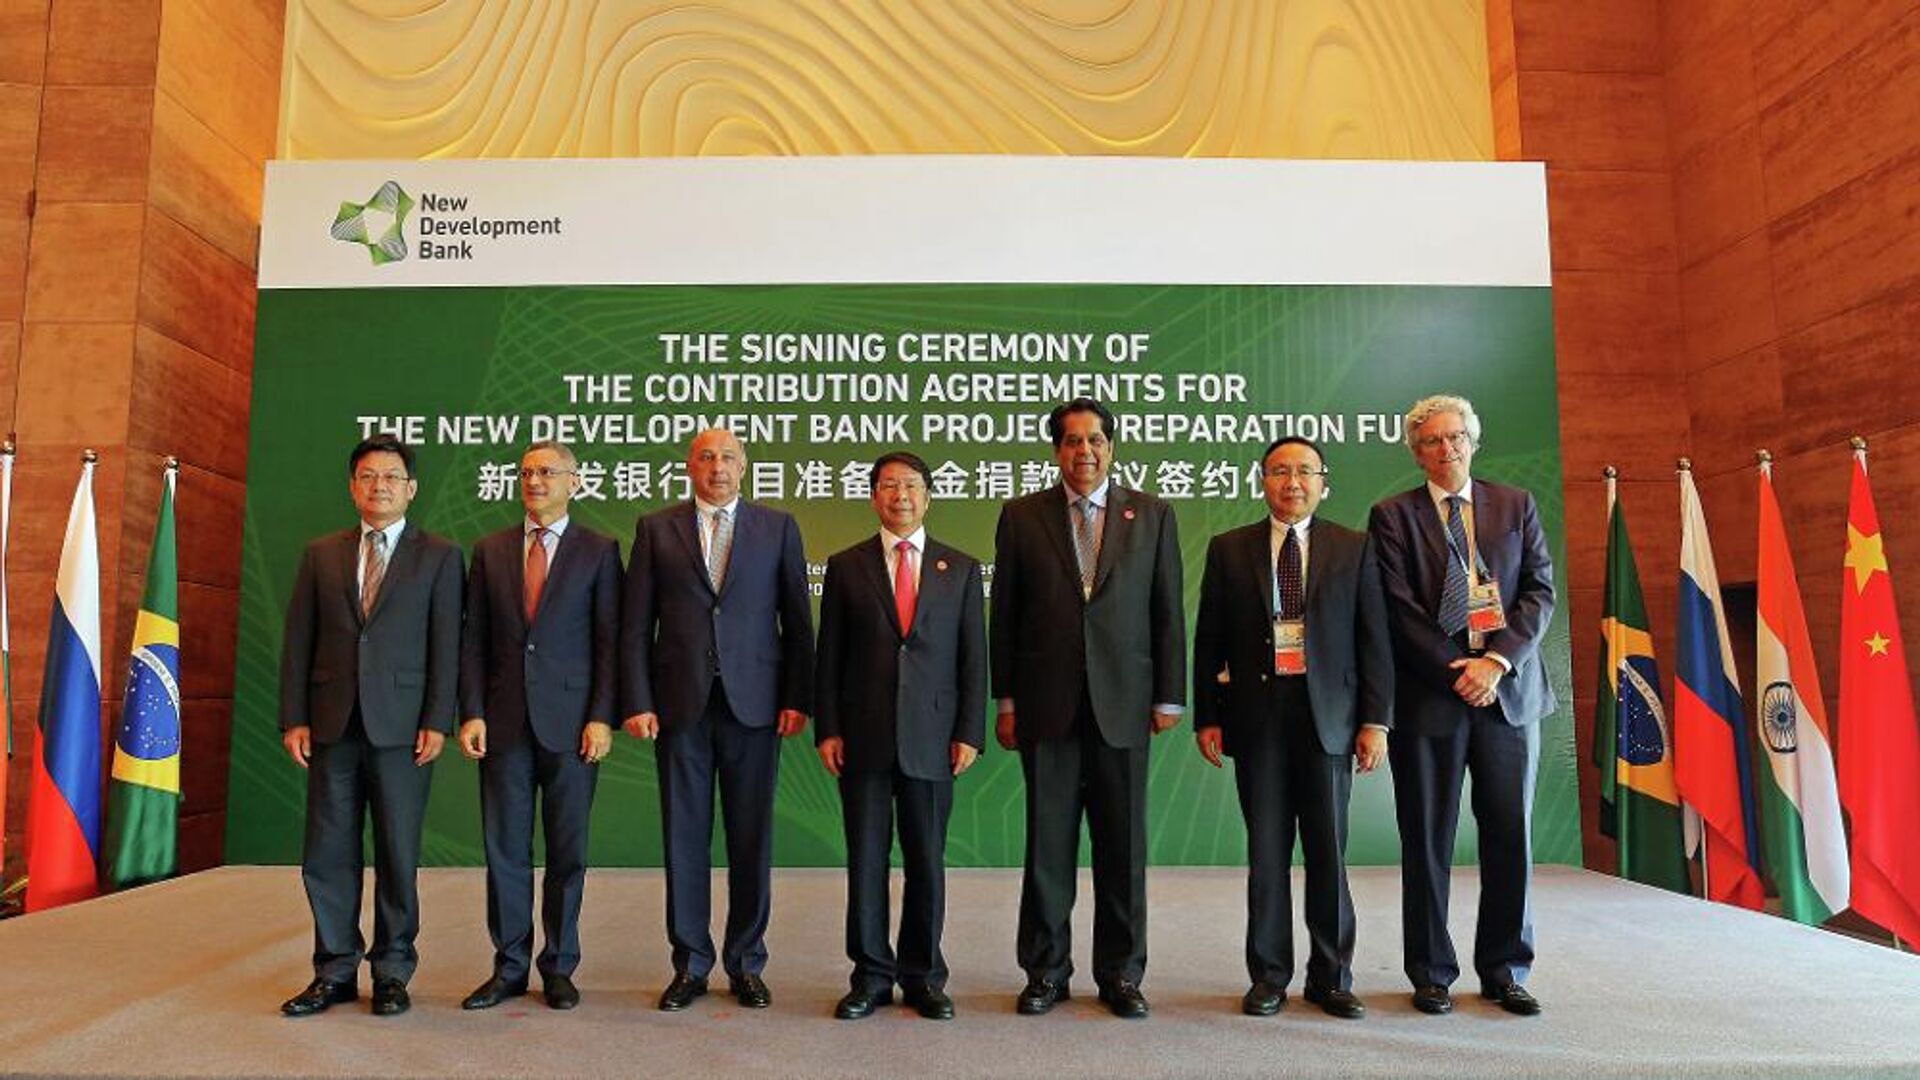 O economista Paulo Nogueira Batista Jr. (à direita) durante cúpula do Novo Banco de Desenvolvimento (NDB, na sigla em inglês) em 2017, em Xiamen, na China - Sputnik Brasil, 1920, 14.09.2022